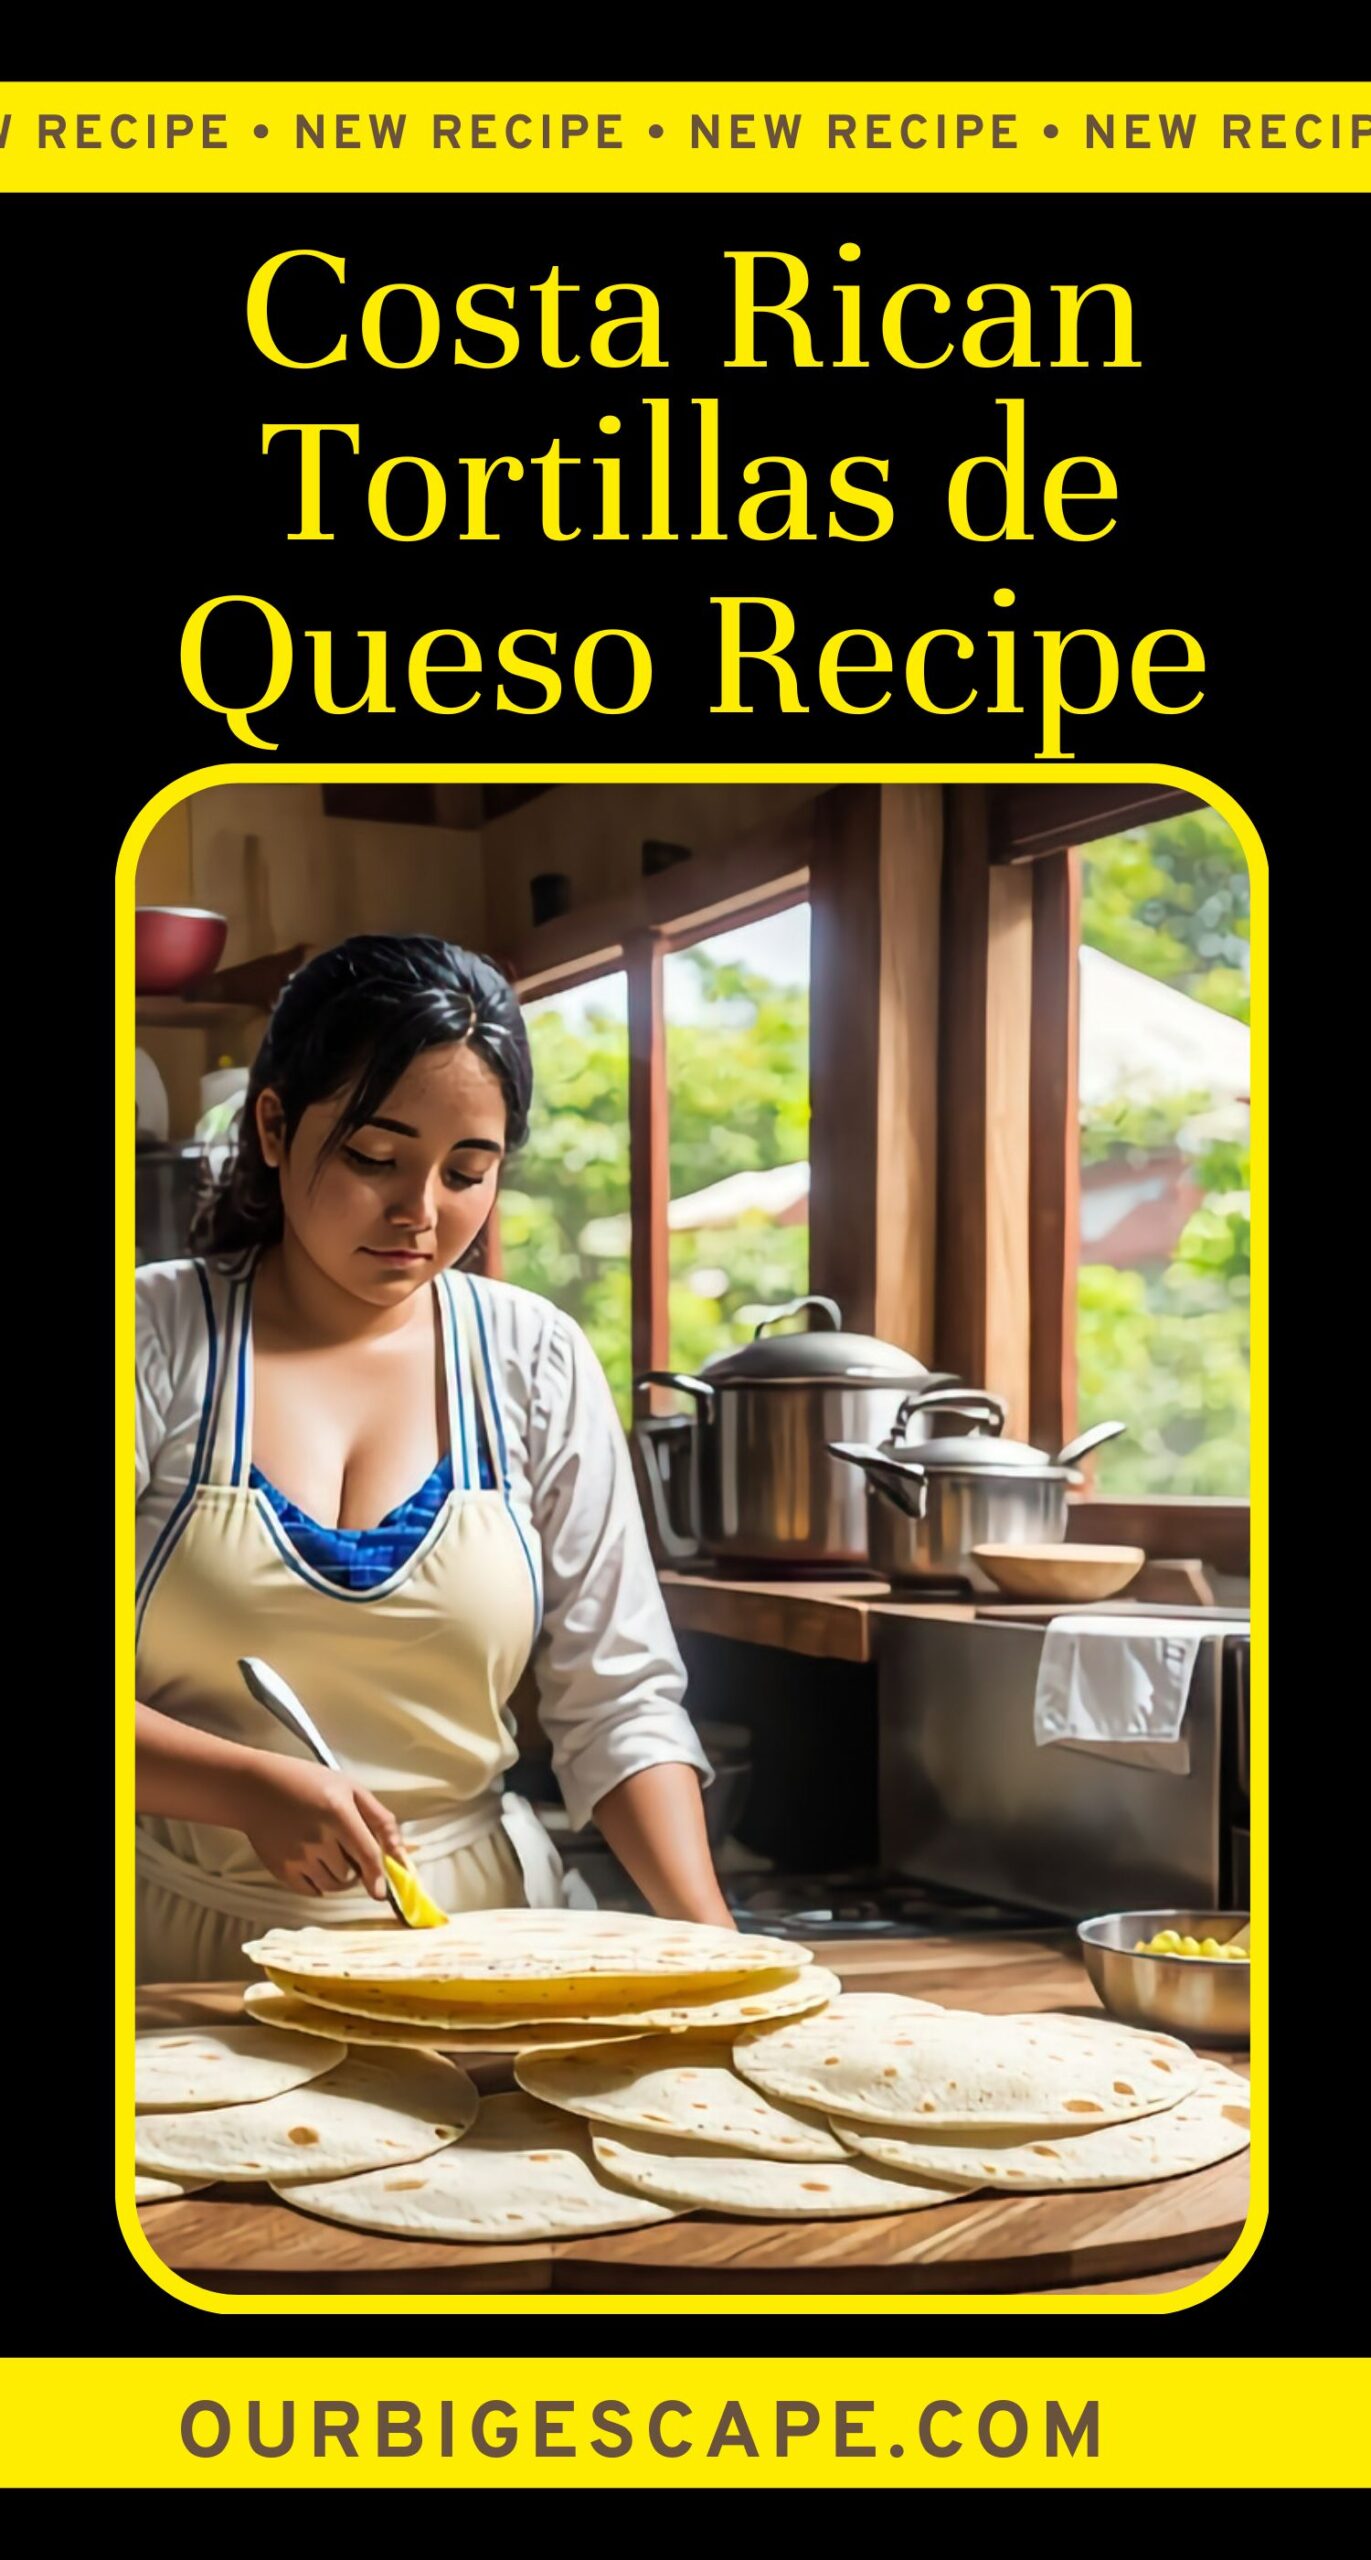 21. Costa Rican Tortillas de Queso Recipe (1)